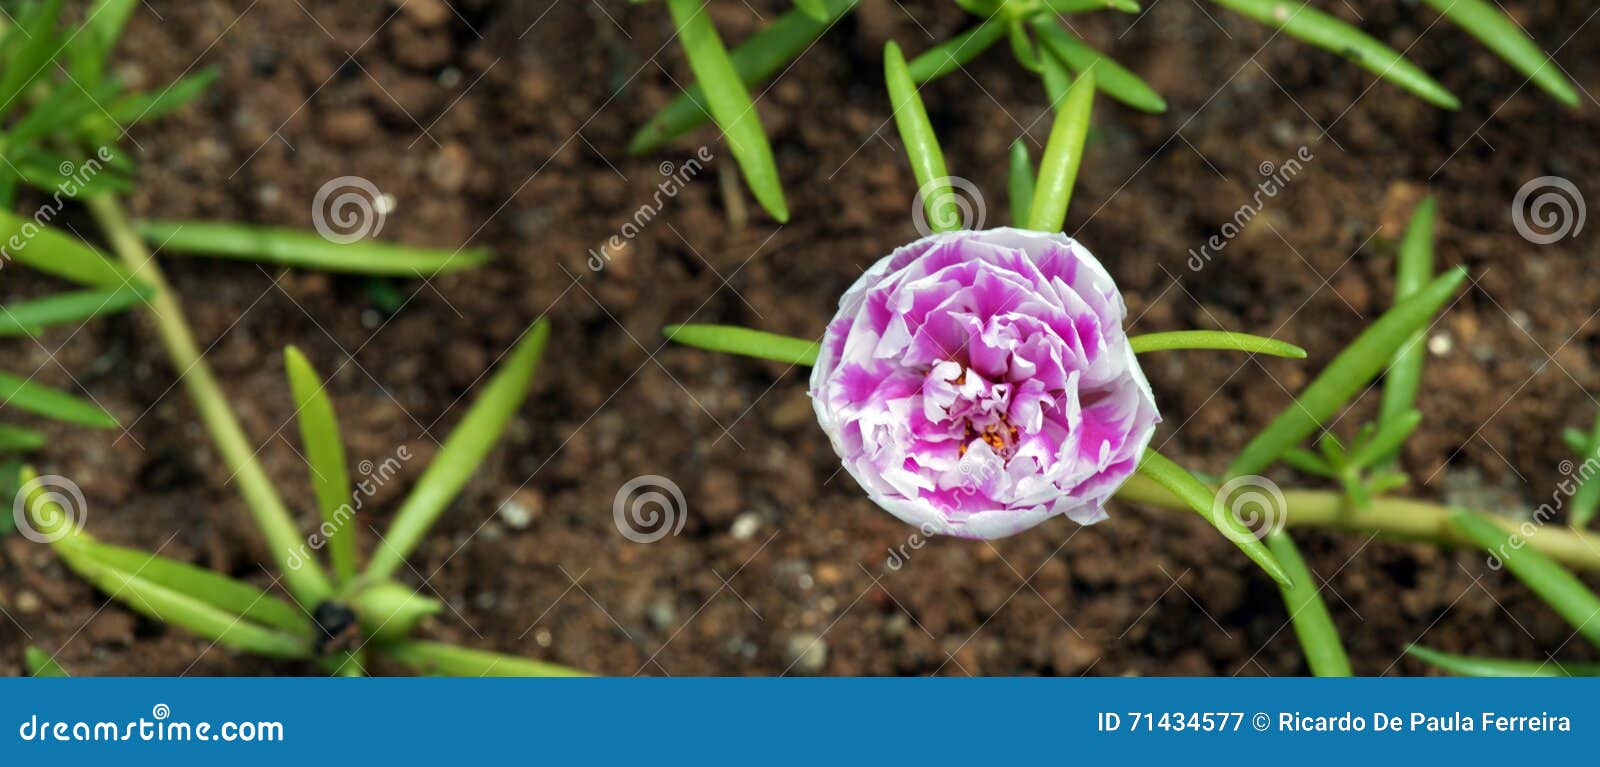 Musgo De Rosa, Flor Estranha Que Abre Em Onze Horas Imagem de Stock -  Imagem de floral, biodiversidade: 71434577